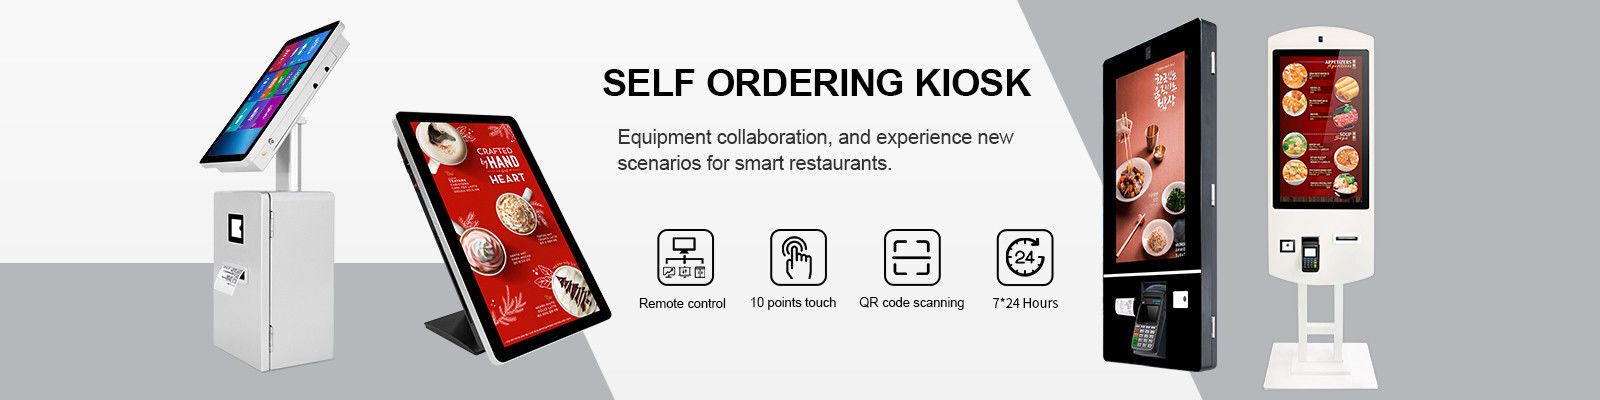 Self Ordering Kiosk